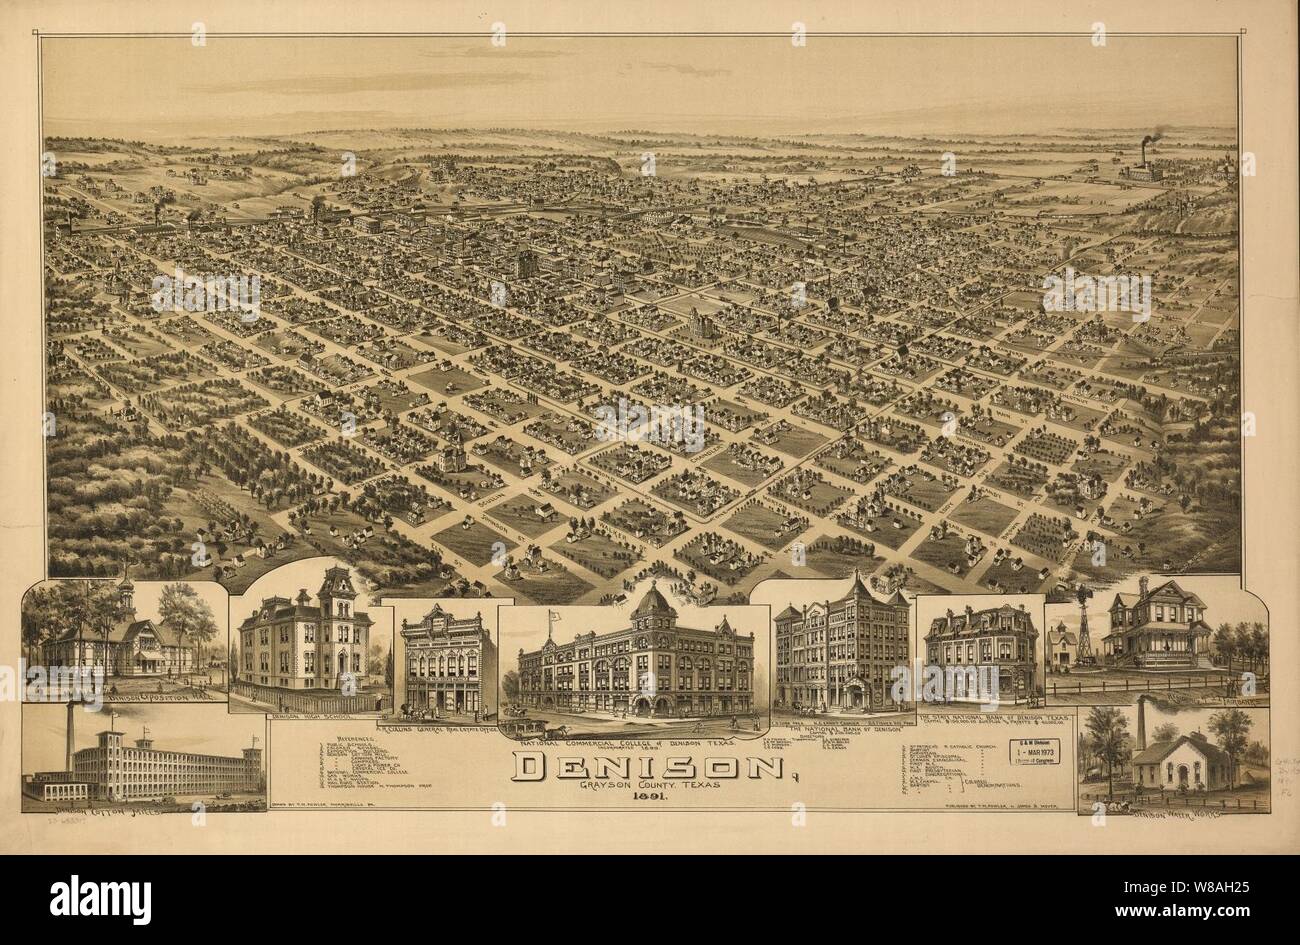 Denison, Grayson County, Texas 1891. Banque D'Images